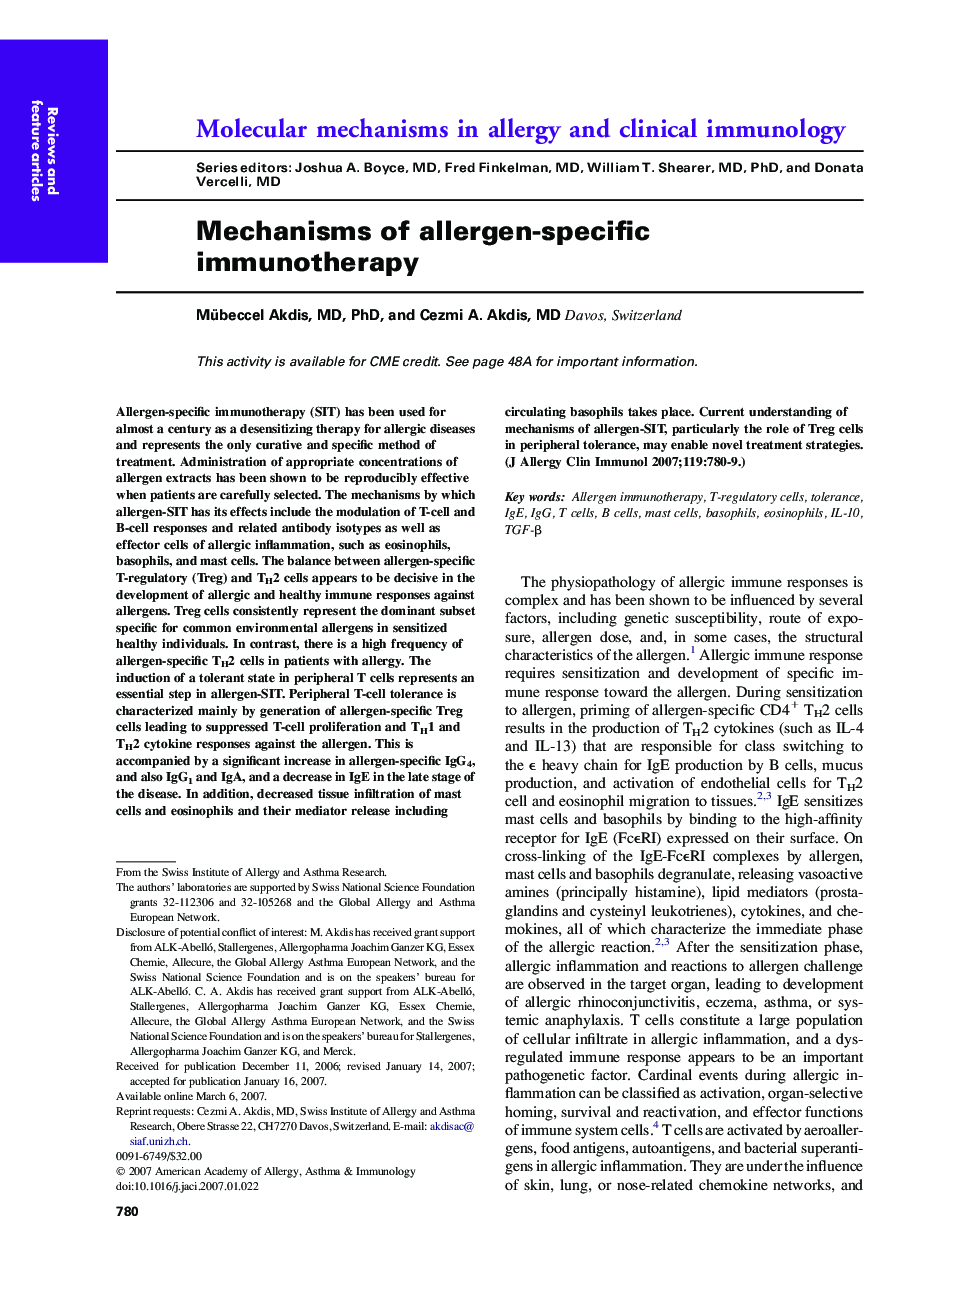 Mechanisms of allergen-specific immunotherapy 